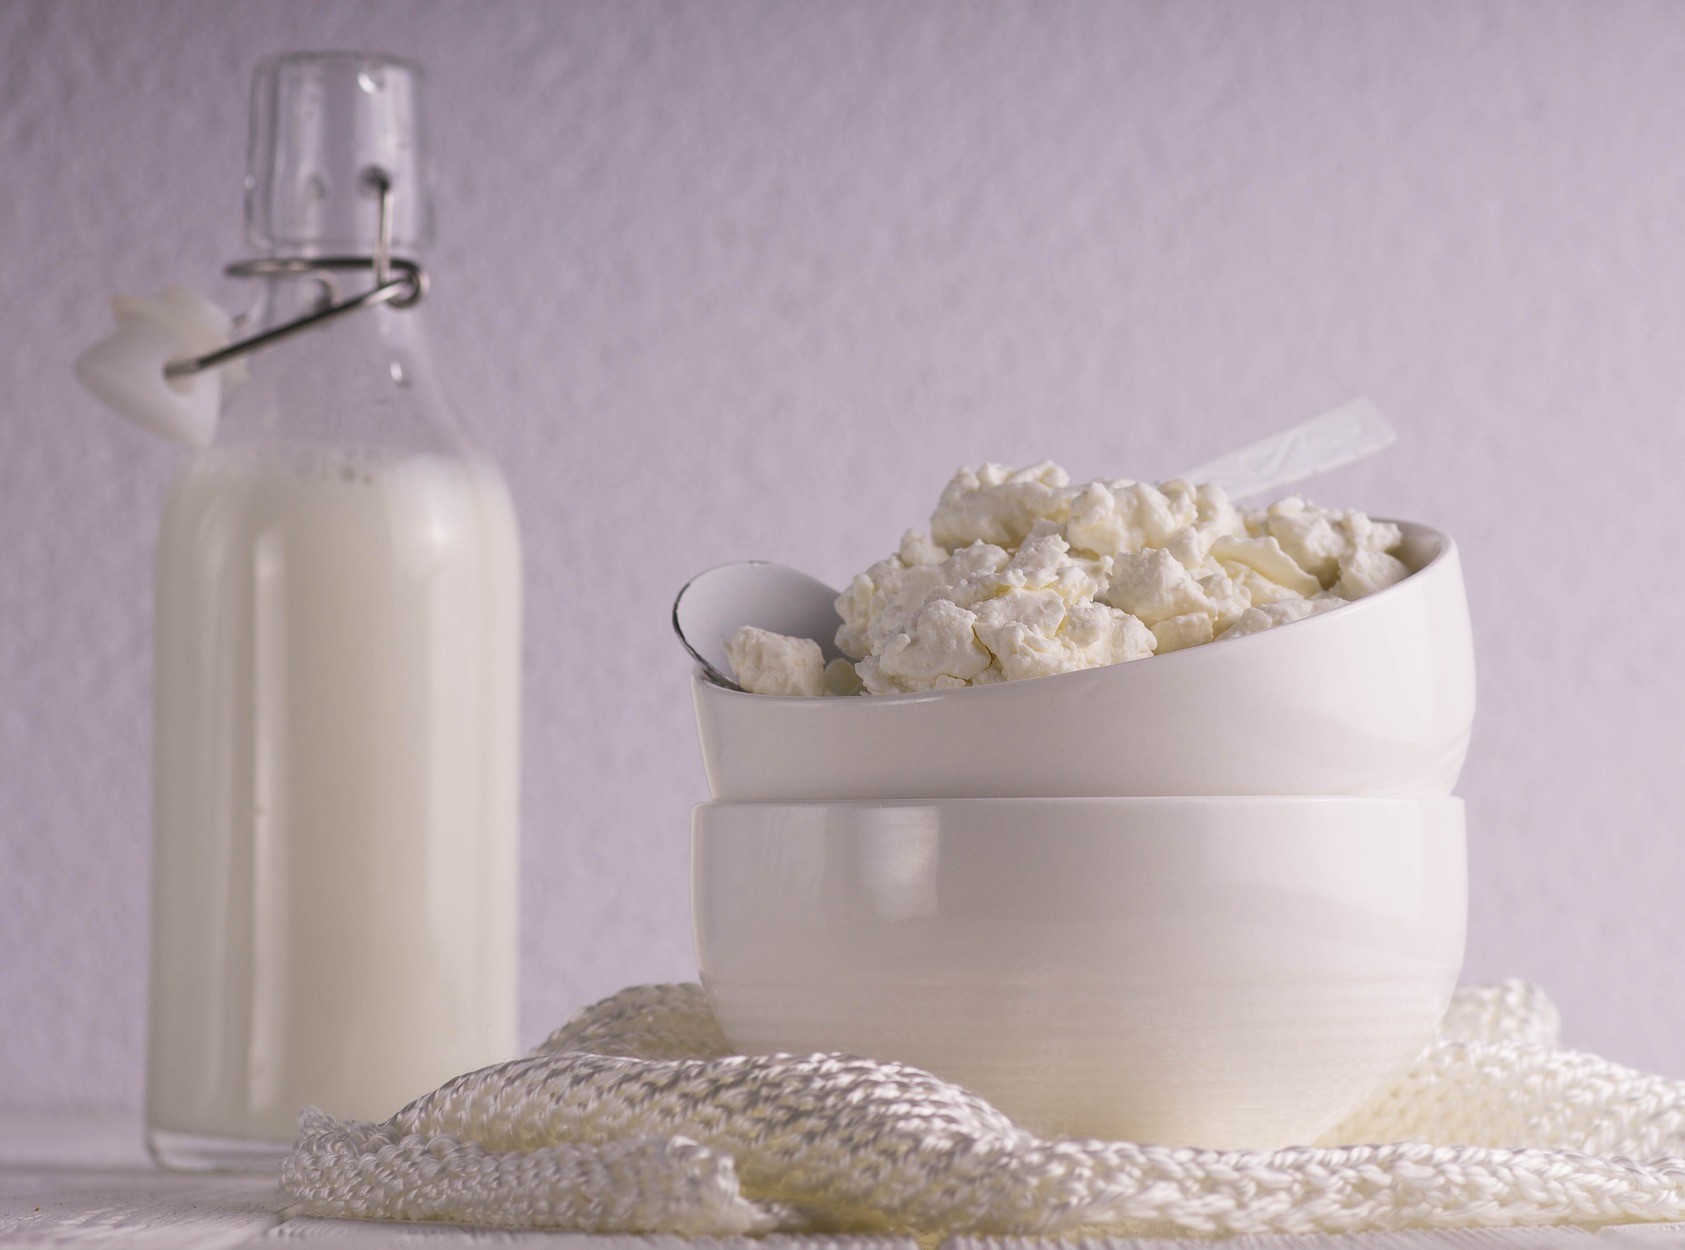 Produits laitiers : Quel rôle leur donner dans ton alimentation ?